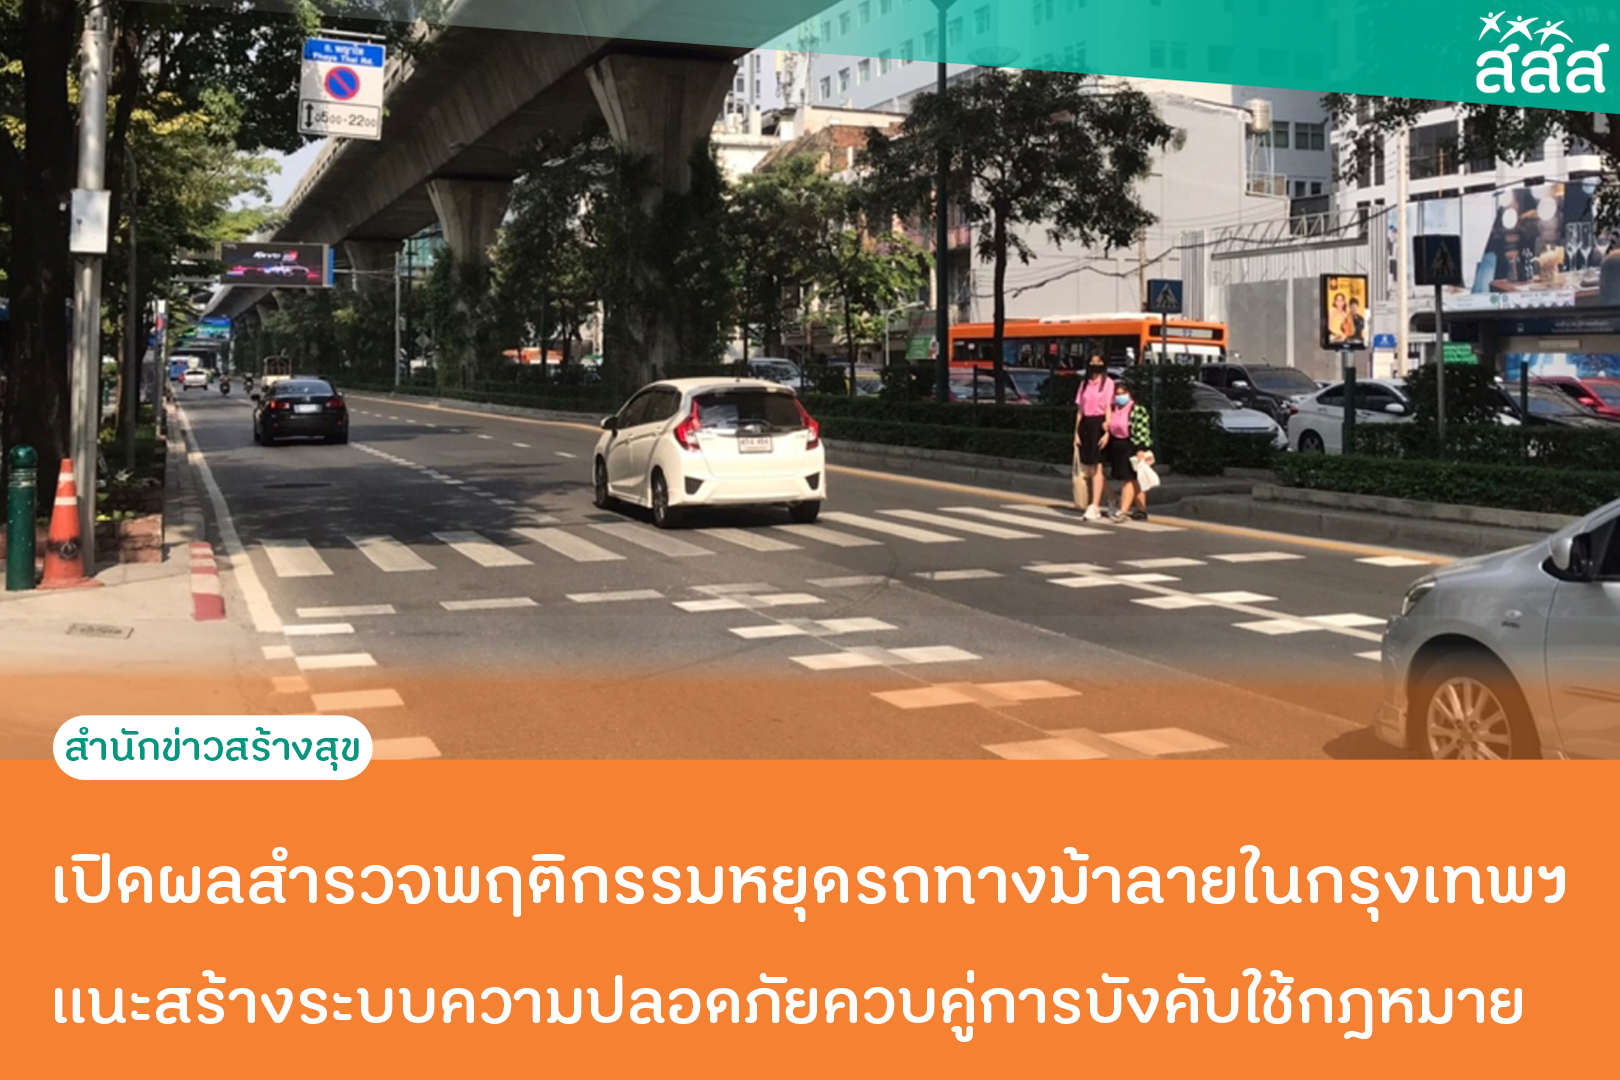 เปิดผลสำรวจพฤติกรรมหยุดรถทางม้าลายในกรุงเทพฯ  แนะสร้างระบบความปลอดภัยควบคู่การบังคับใช้กฎหมาย thaihealth